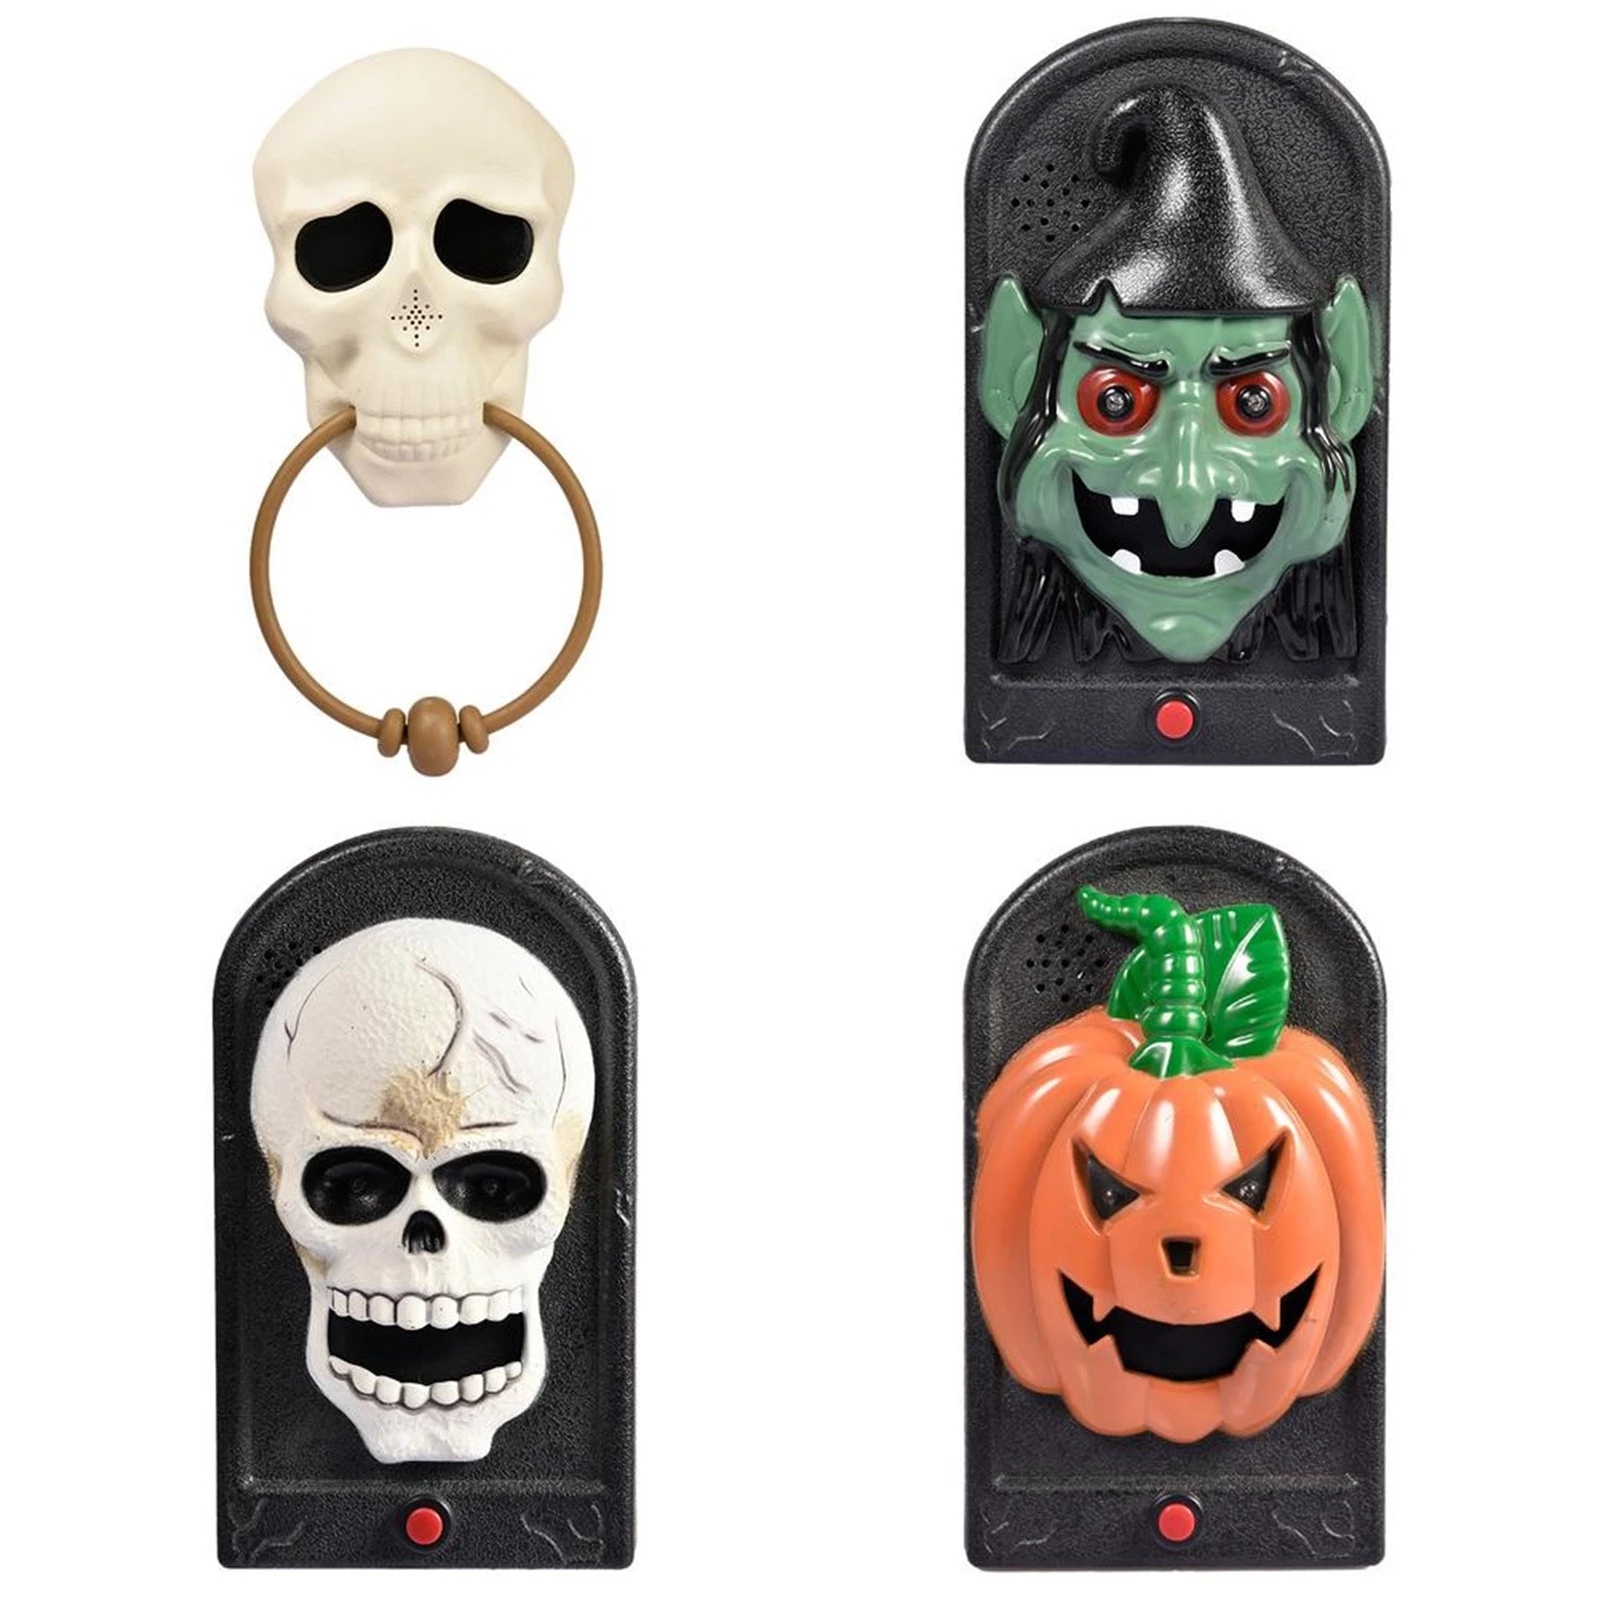 Halloween-Doorbell-Glowing-Sounding-Horror-Toy-Welcome-Door-Hanging-Skull-Decora-Horror-Props-Glowin-1907298-10